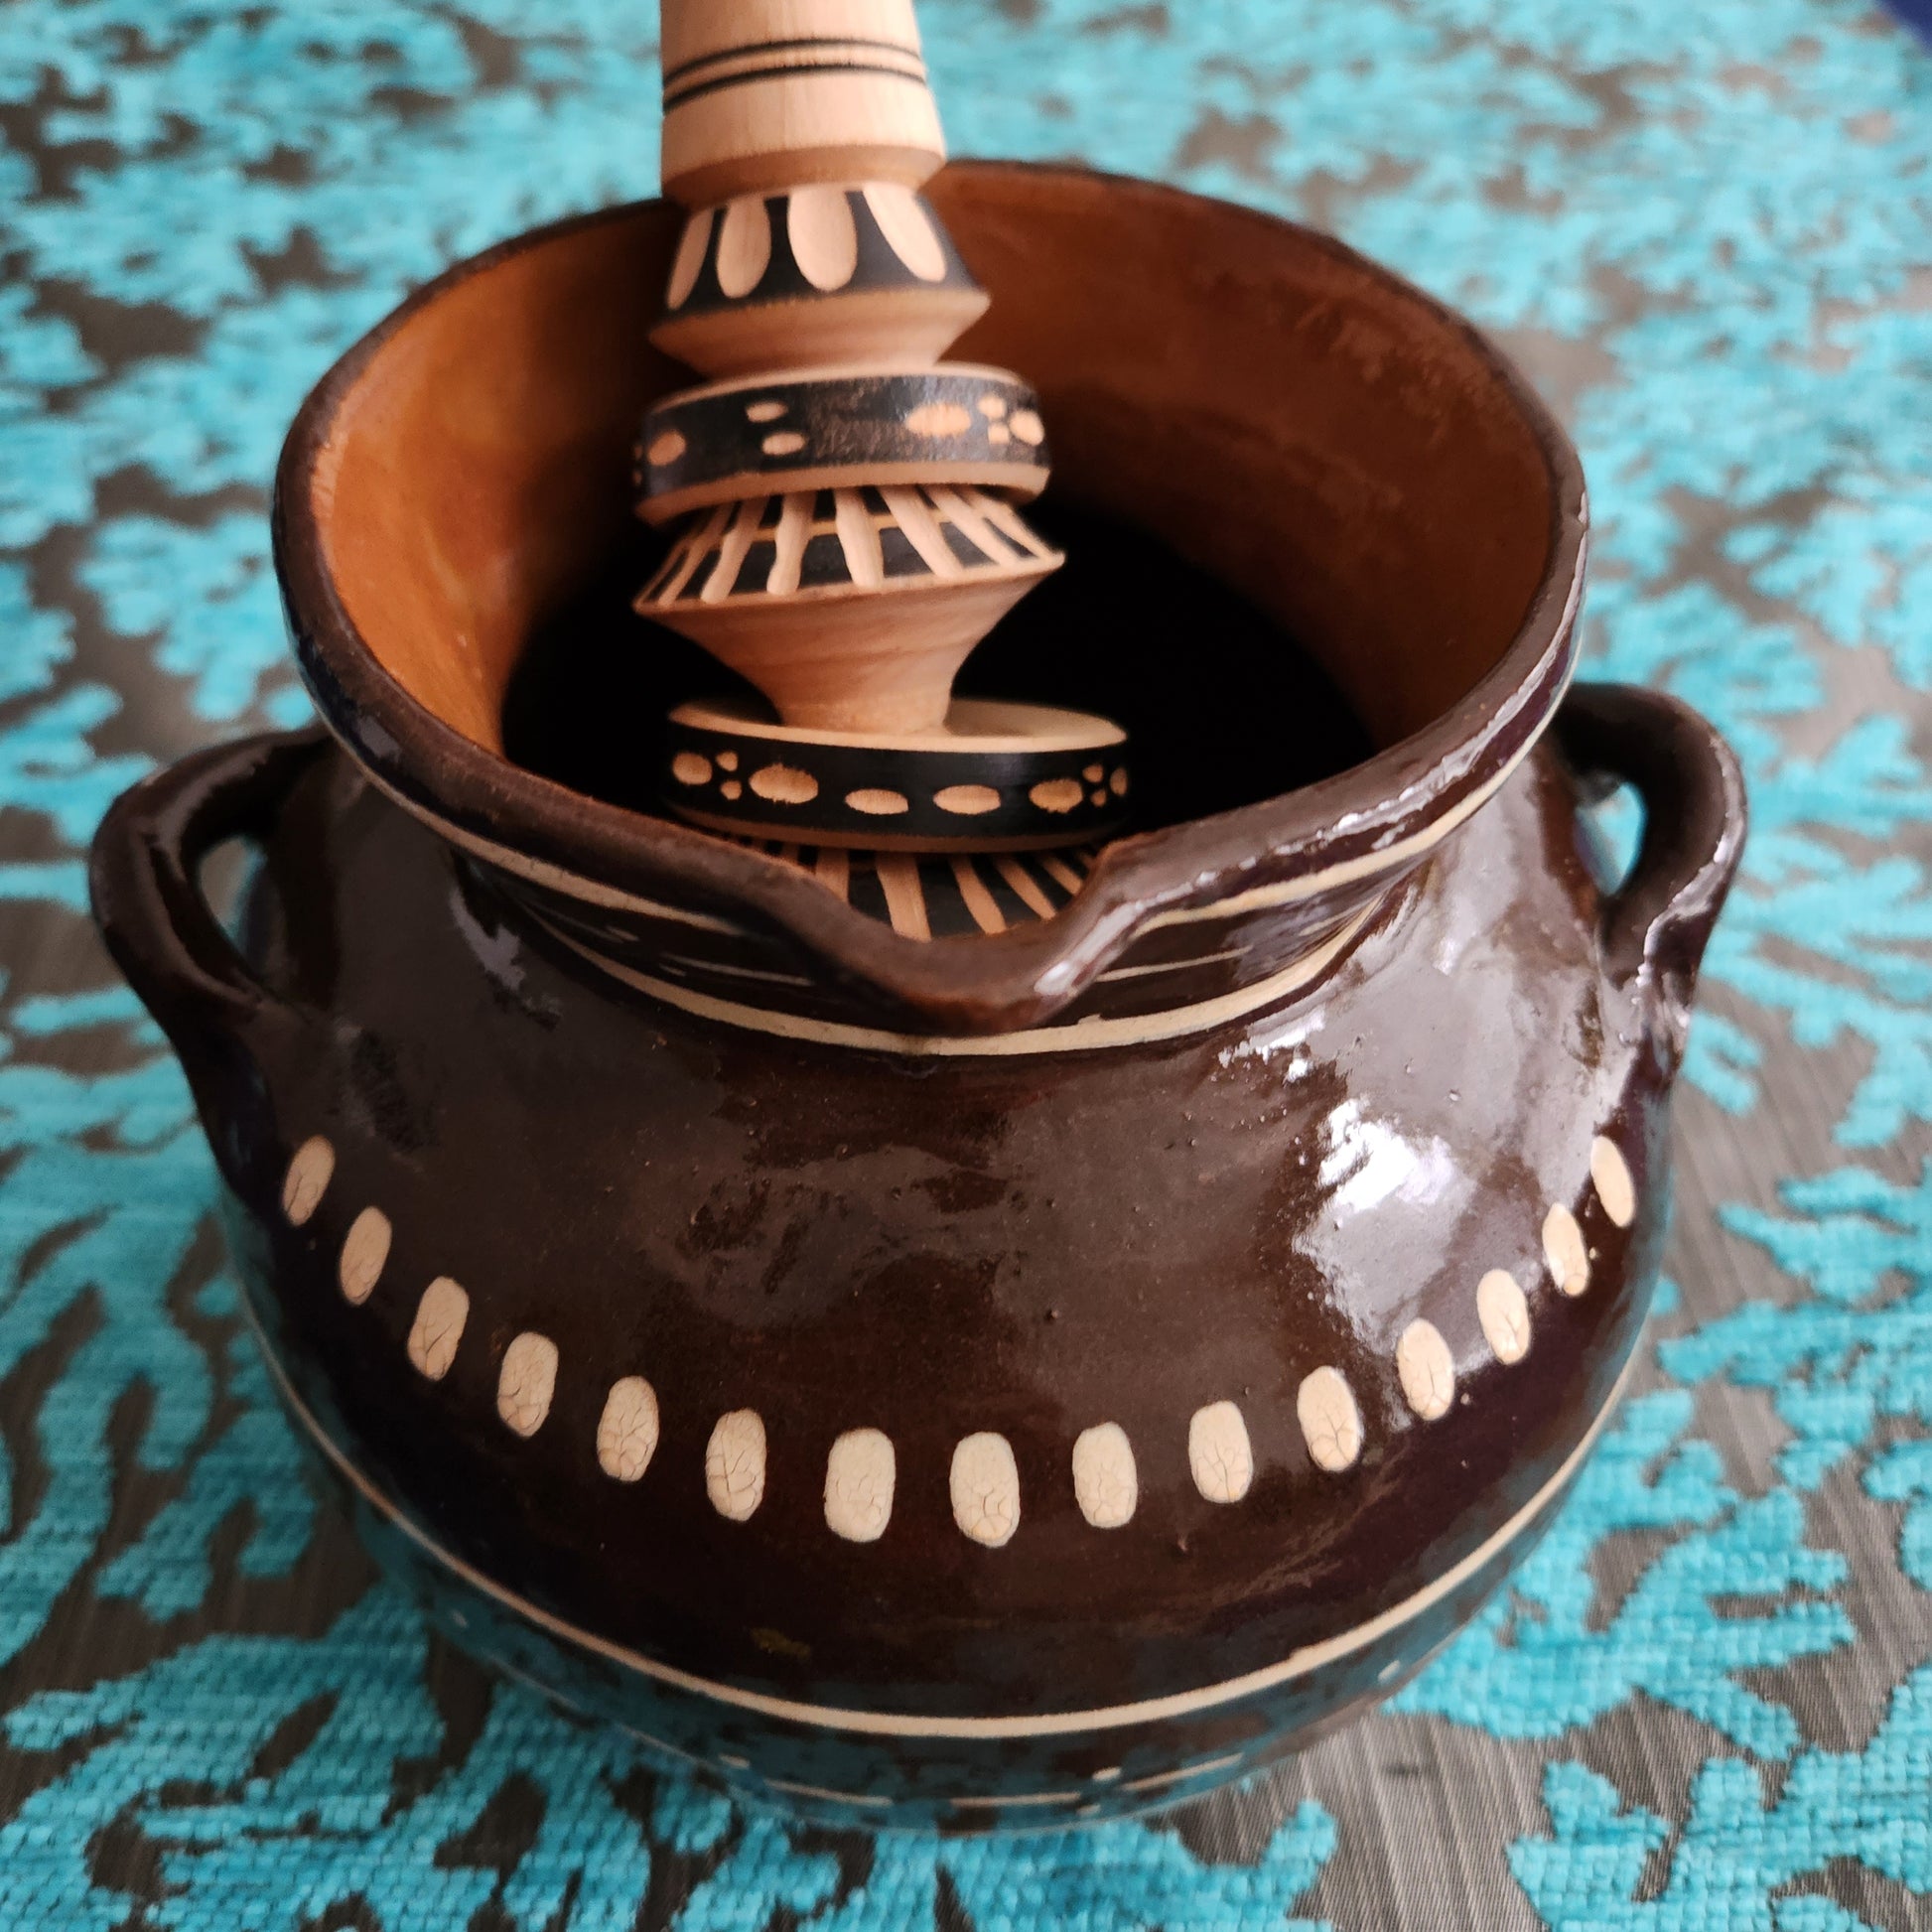 Olla De Barro Ceramic Pot